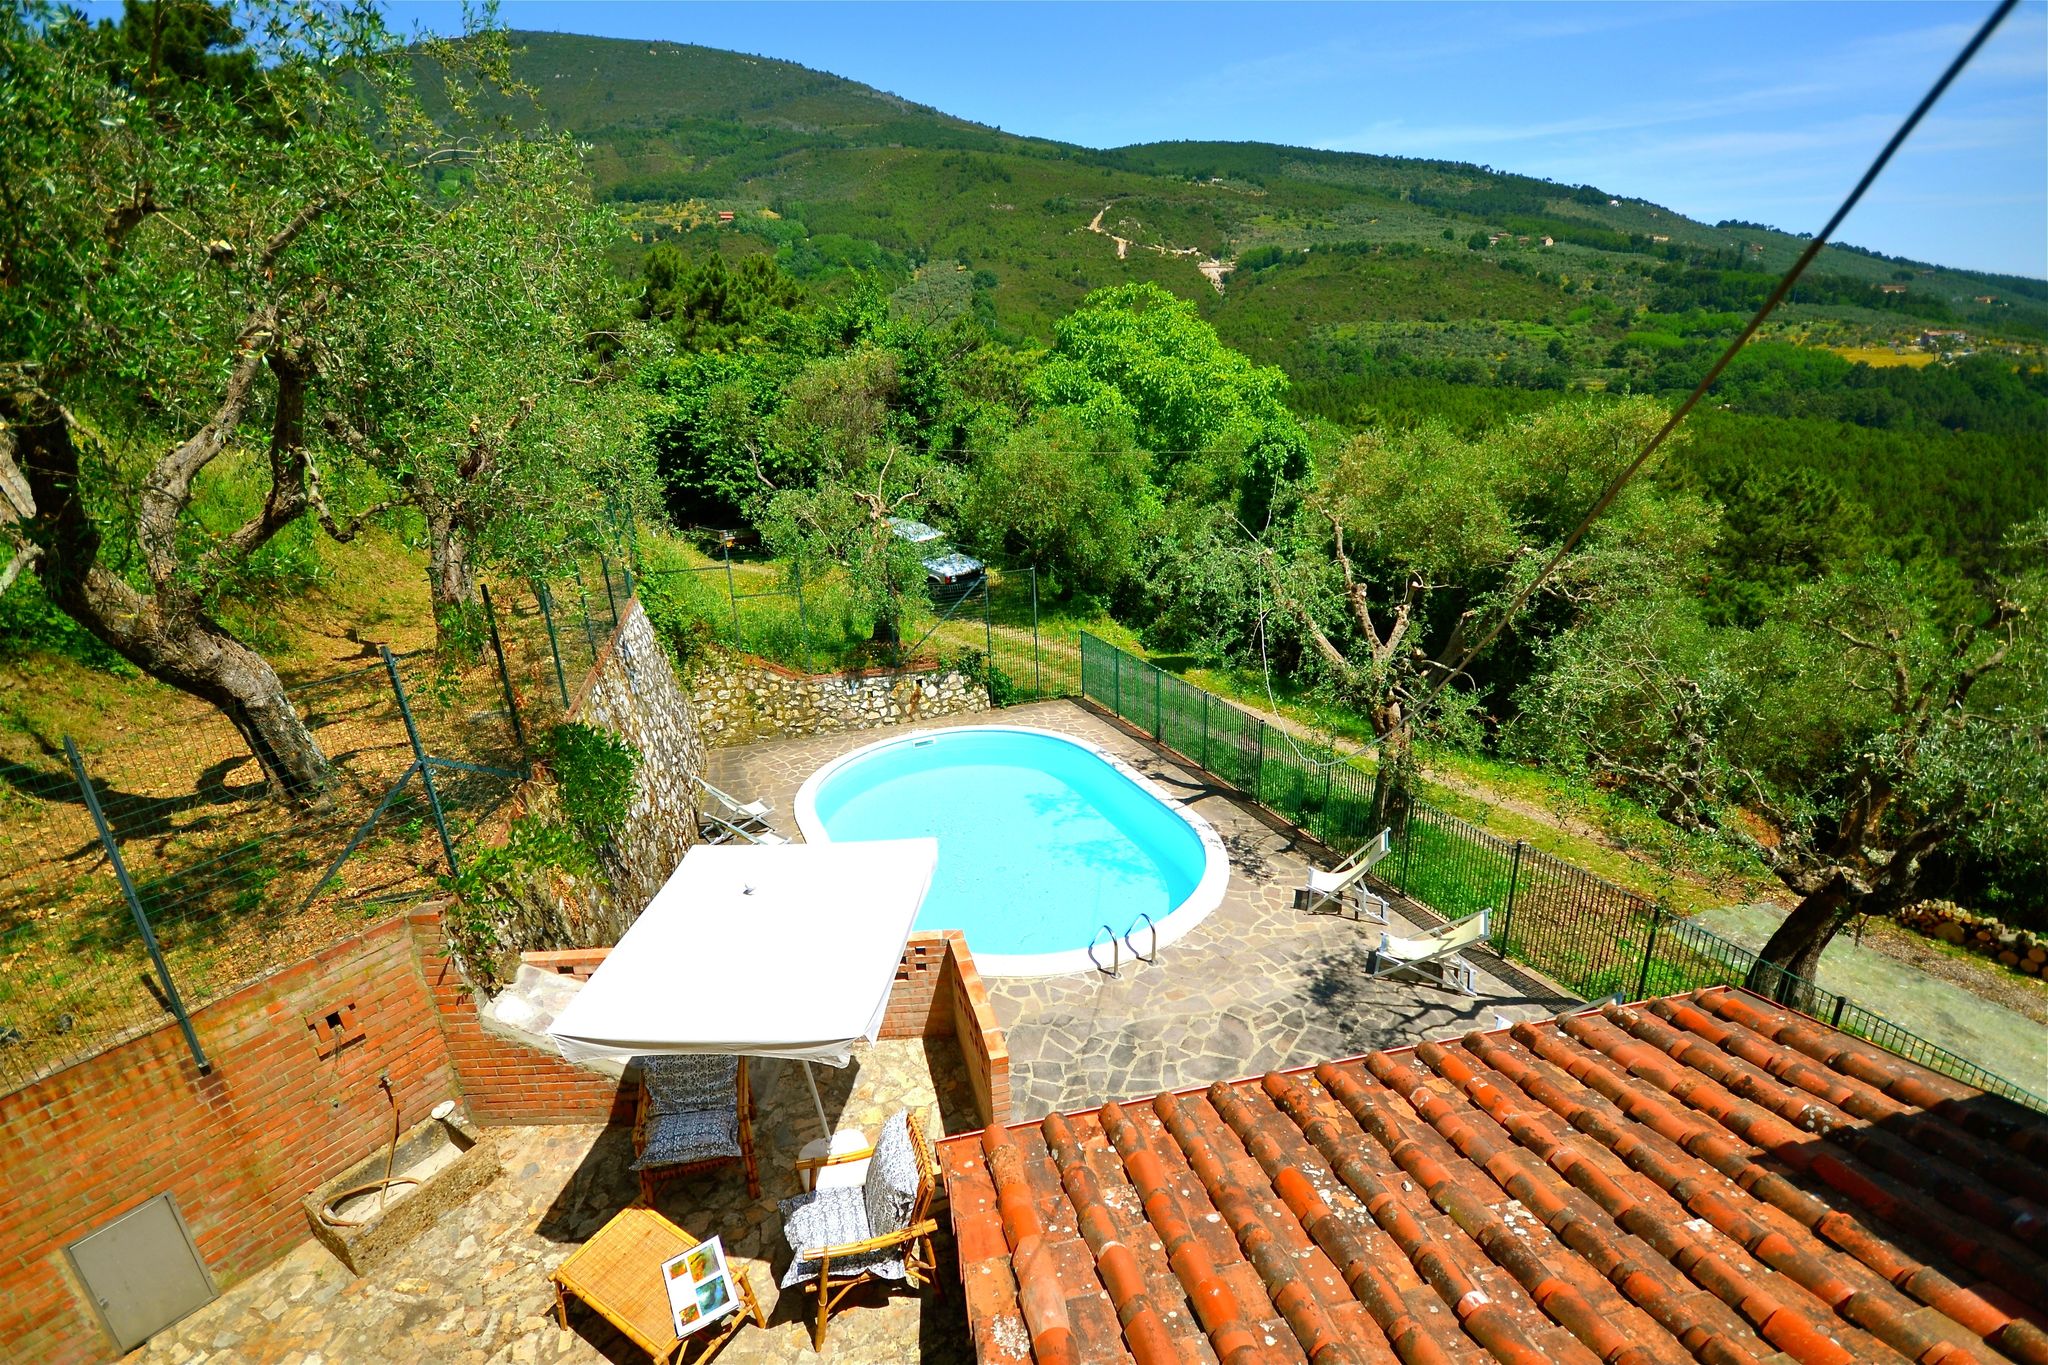 Chaleureuse maison de vacances à Vicopisano avec piscine